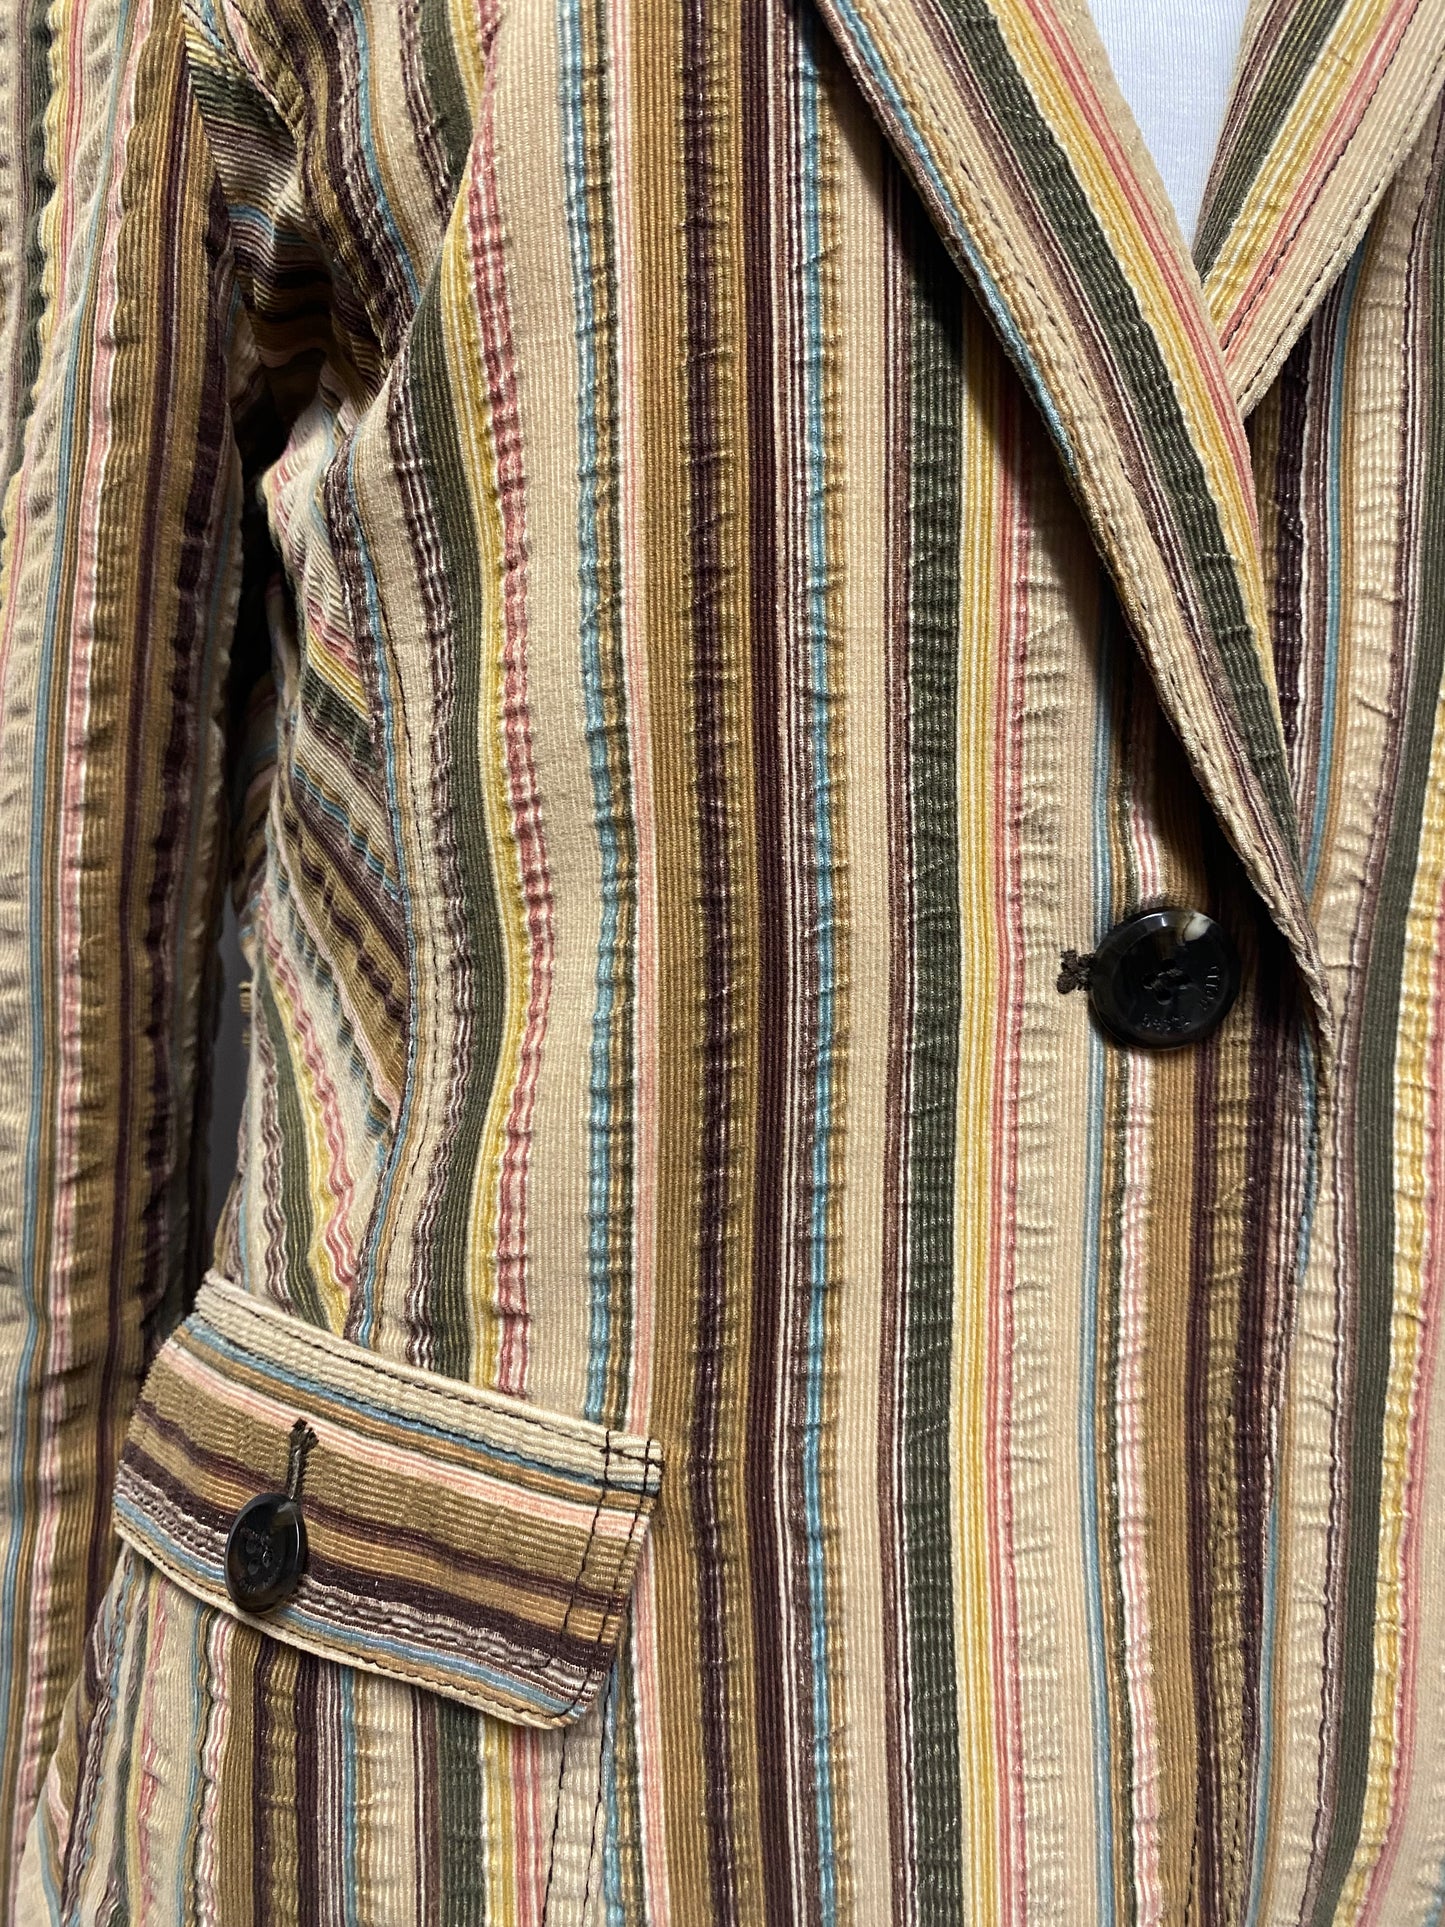 Emilio Pucci Beige Striped Corduroy Vintage Blazer Jacket S/M